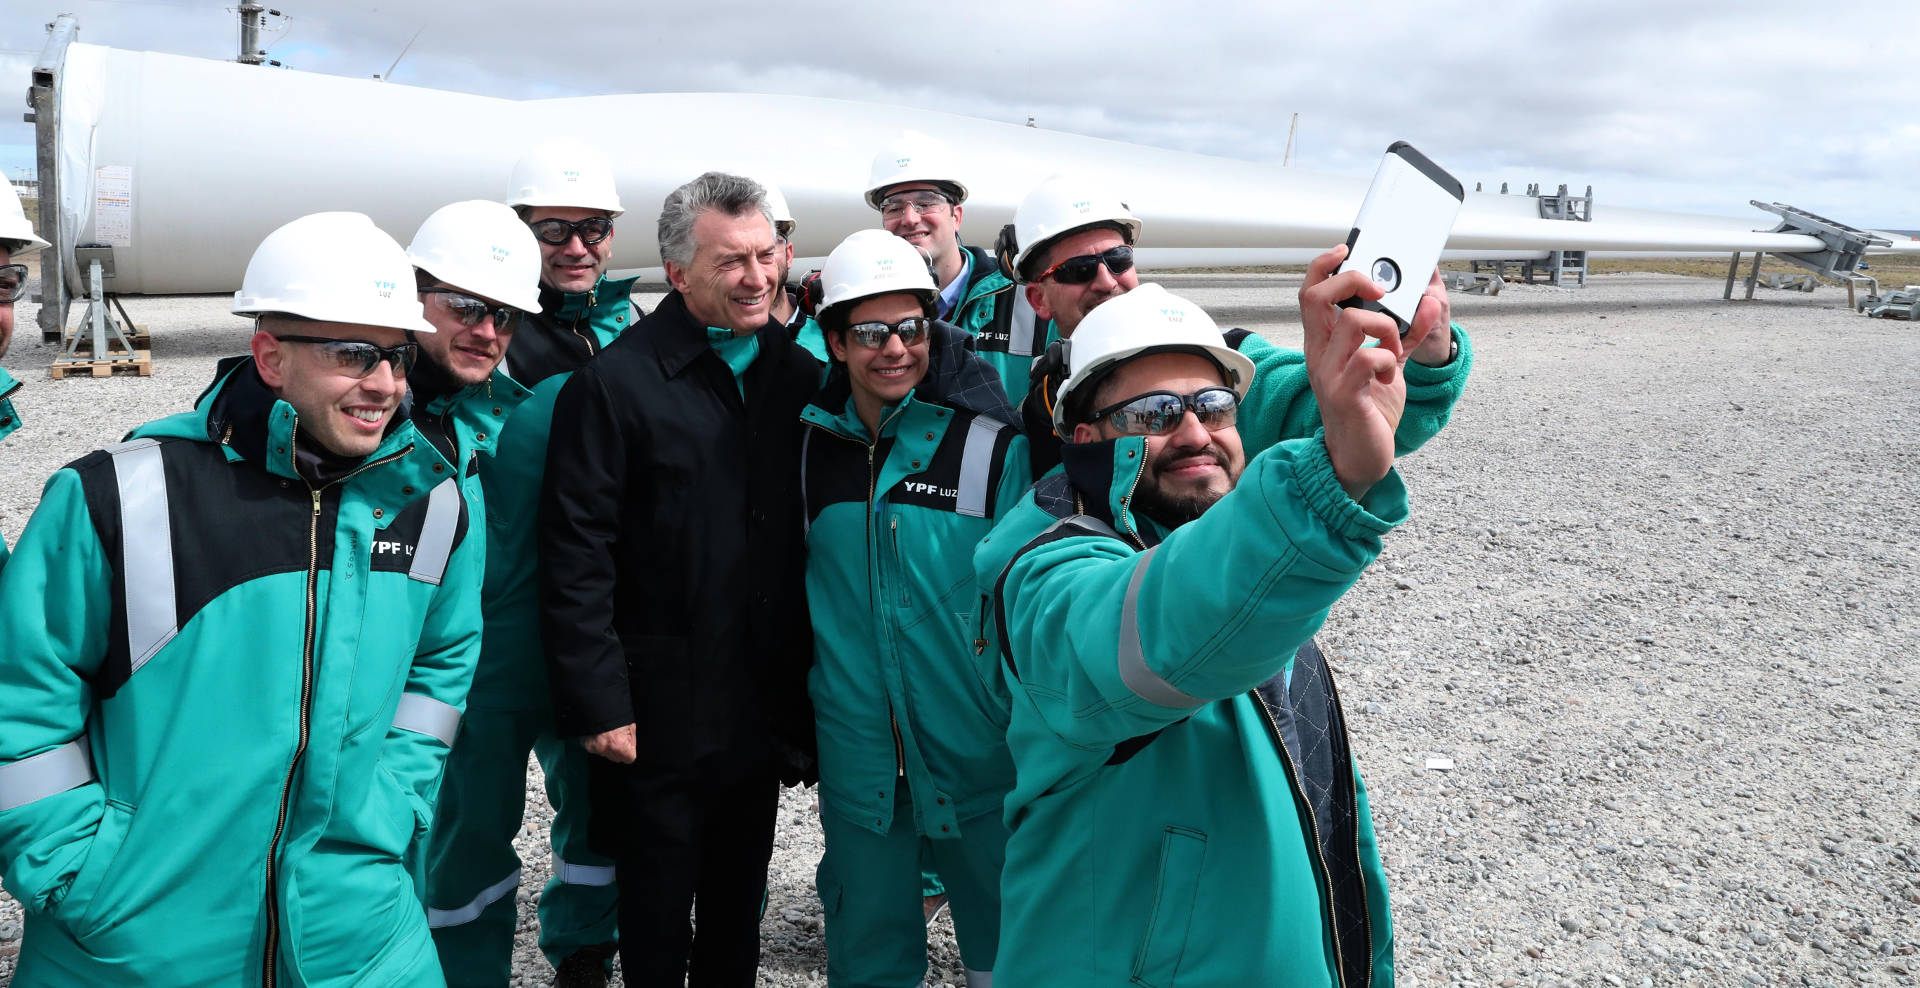 El Presidente encabezó la inauguración del Parque Eólico de Manantiales Behr en Chubut